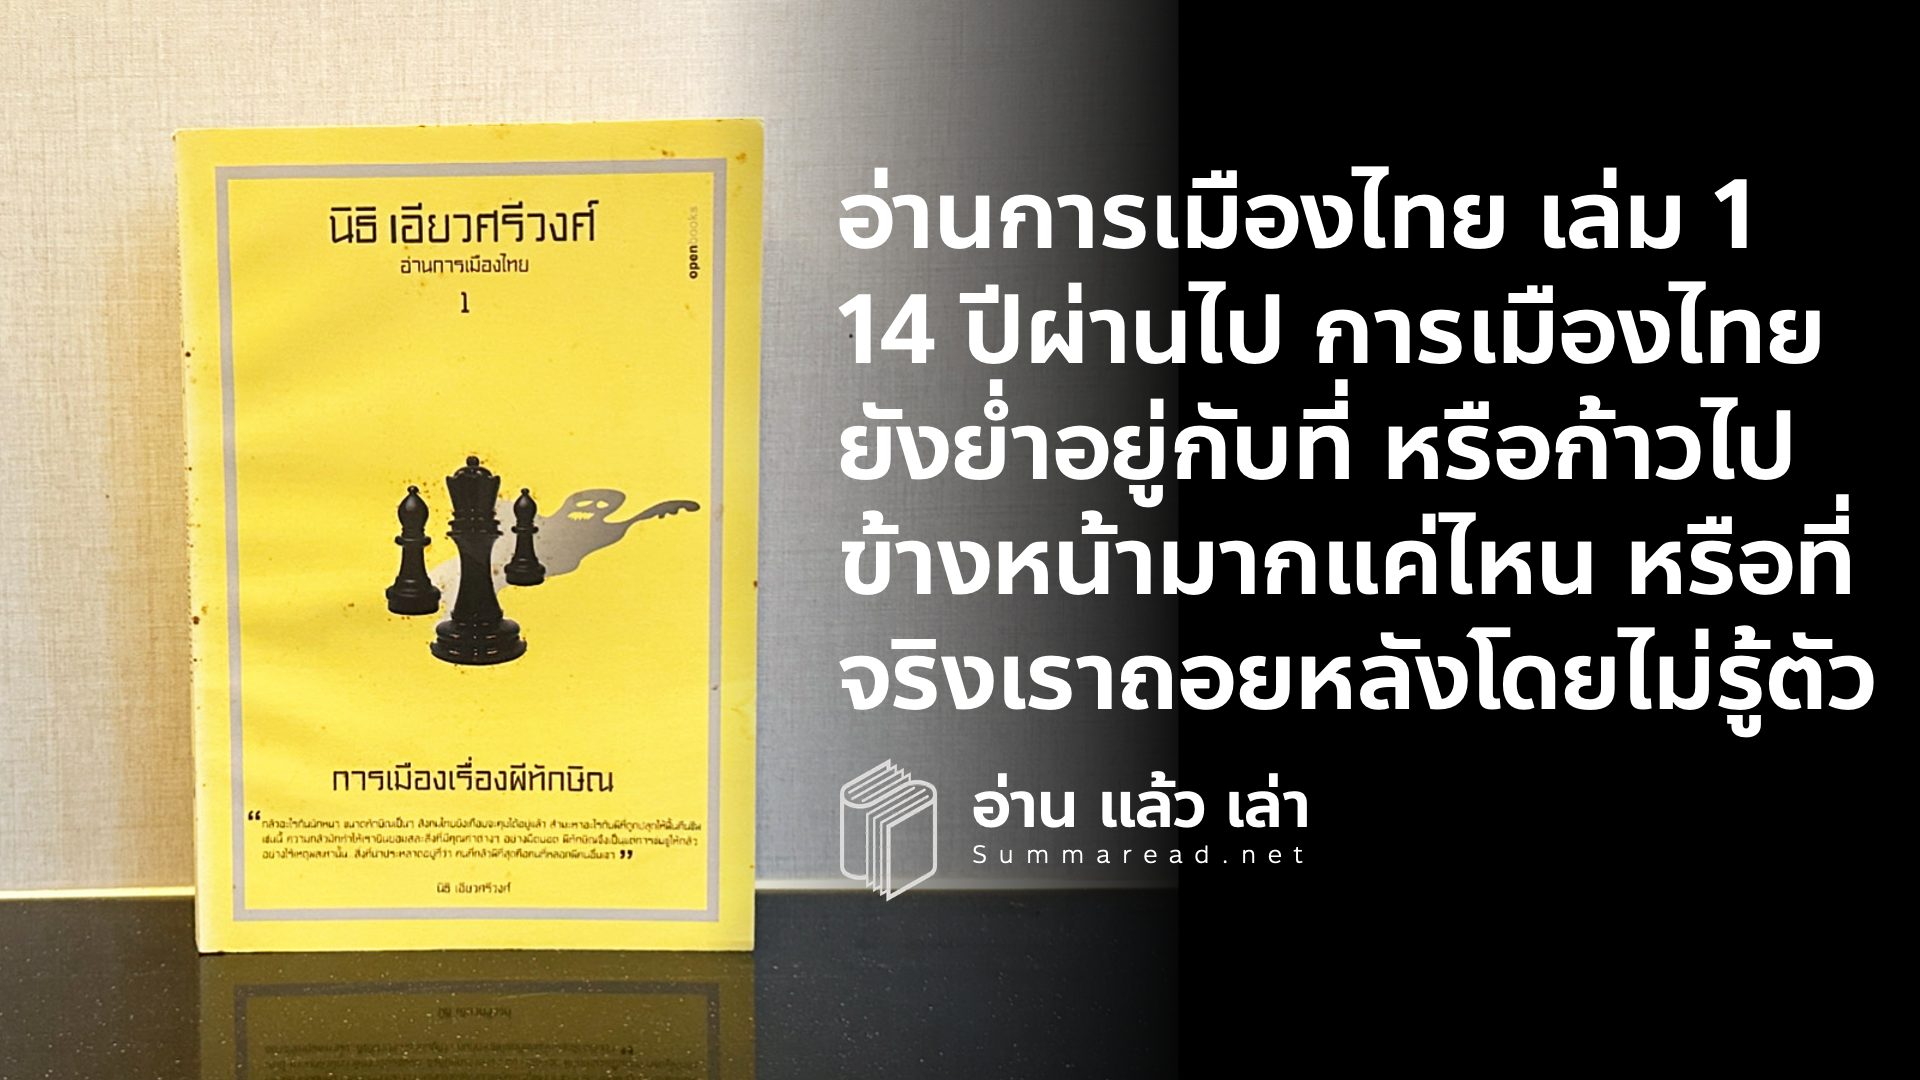 สรุปหนังสือ อ่านการเมืองไทย 1 การเมืองเรื่องผีทักษิณ นิธิ เอียวศรีวงศ์ เขียน เรื่องราวการเมืองไทยภายใต้ม็อบเสื้อแดง เหลือง และสีใหม่ๆ